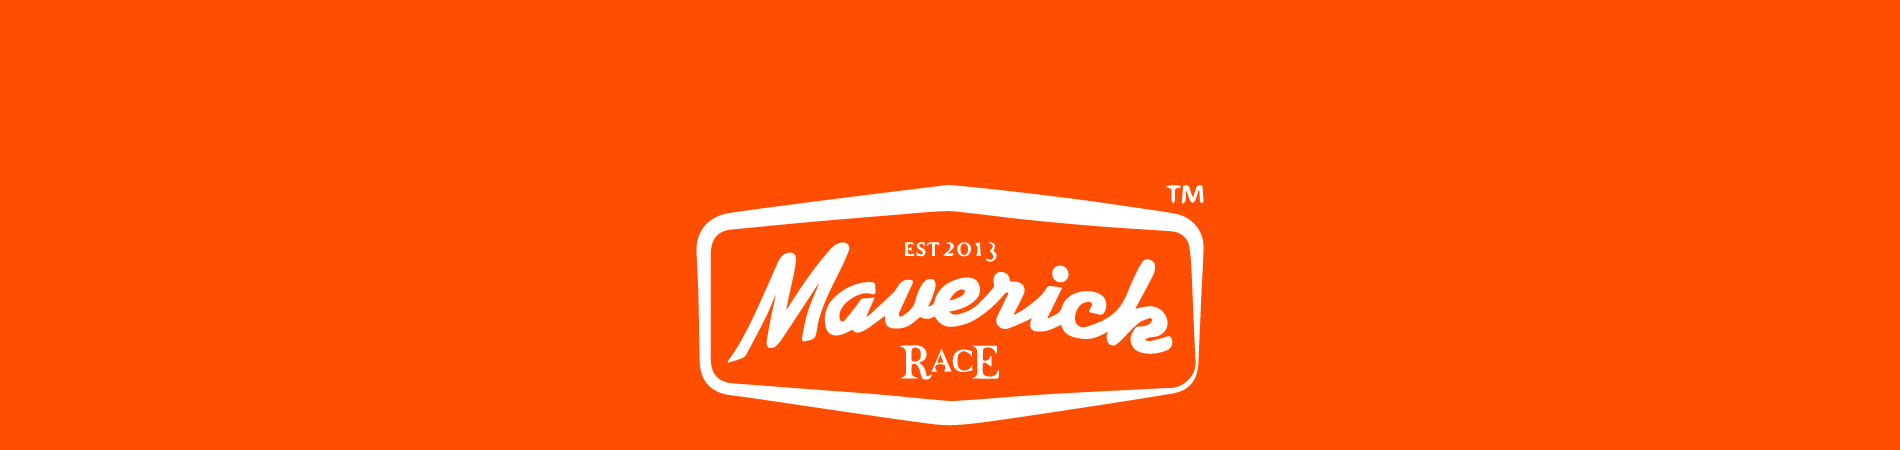 The Maverick inov-8 Original Dorset 2018